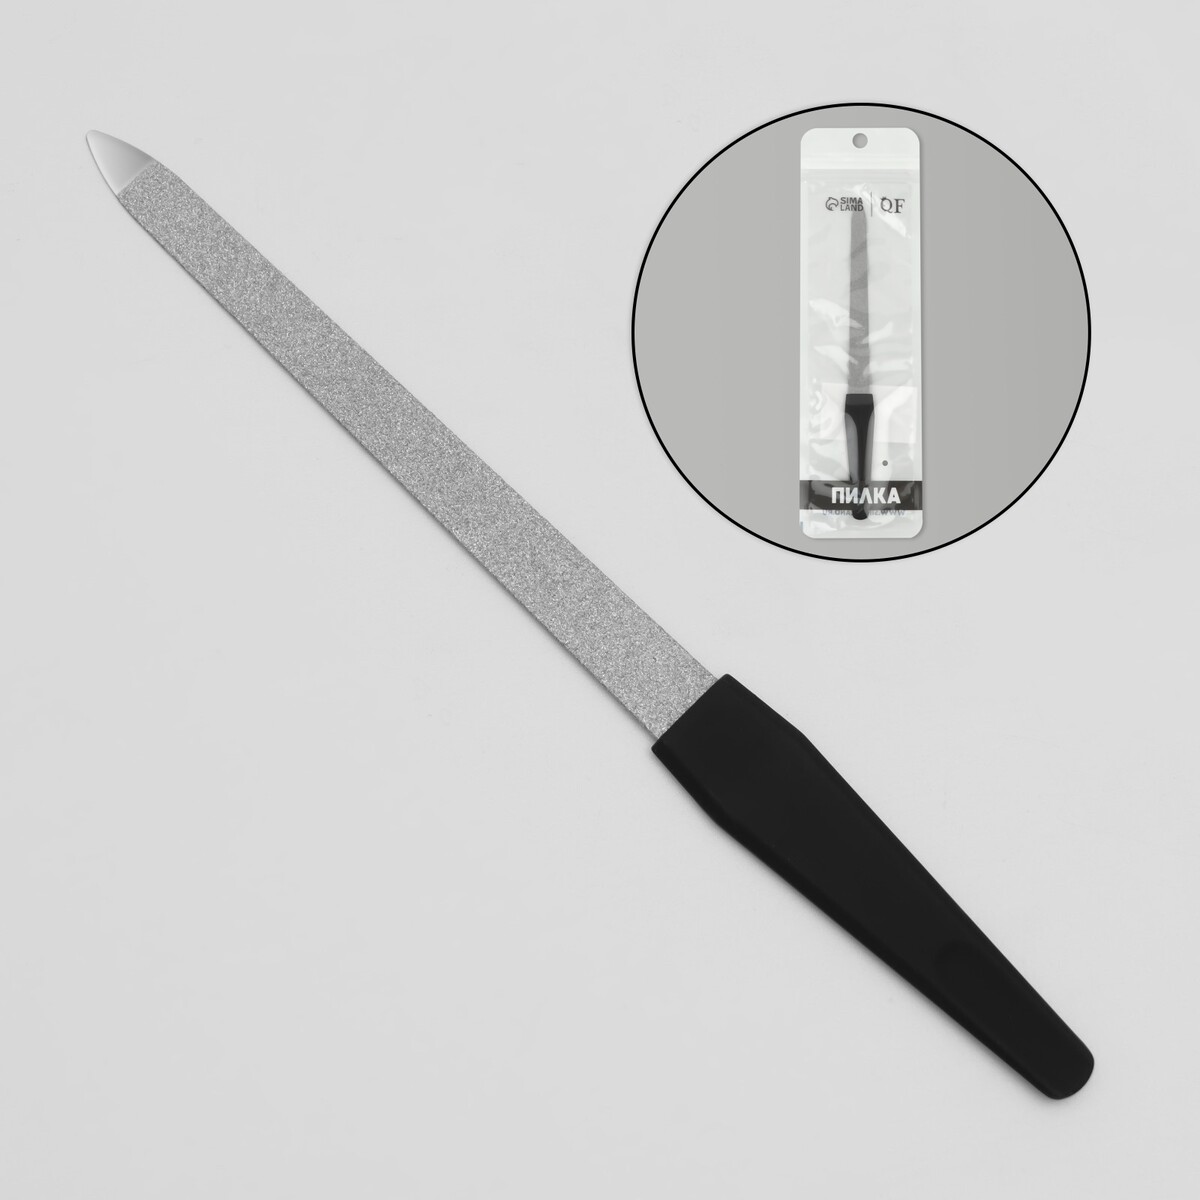 Пилка металлическая для ногтей, прорезиненная ручка, 17 см, цвет серебристый/черный пилка триммер металлическая для ногтей 15 см с защитным колпачком в чехле